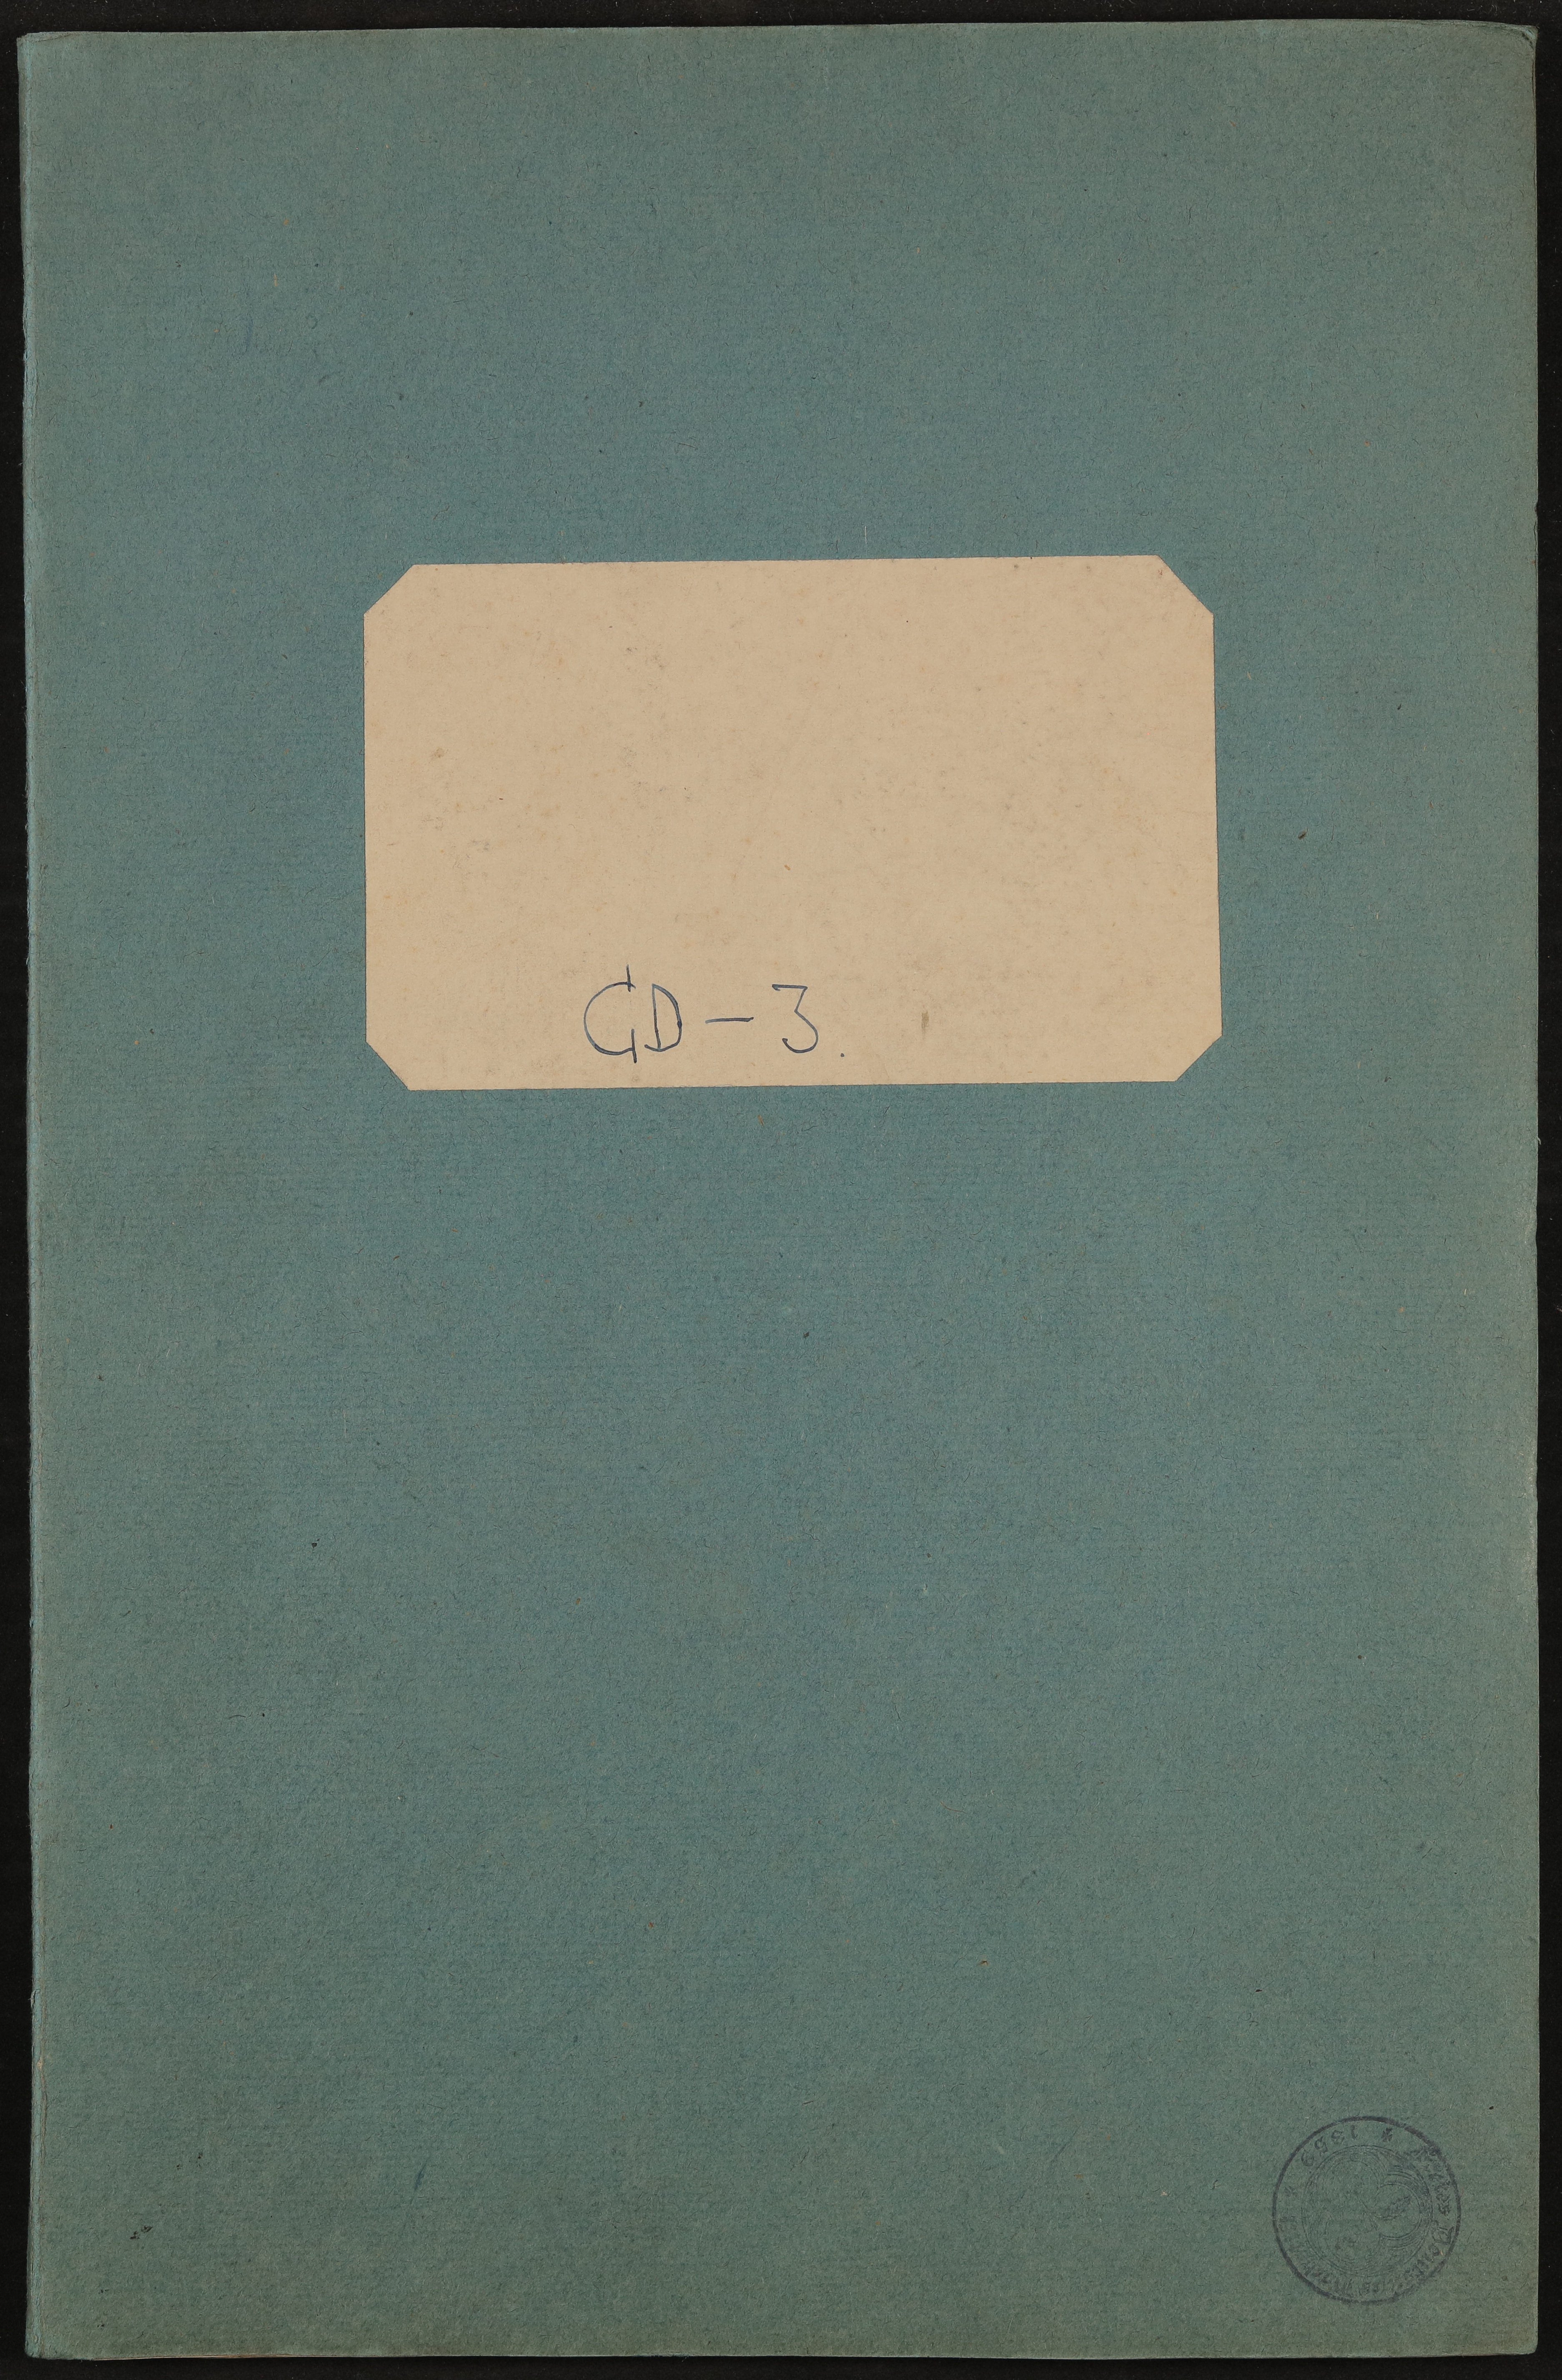 Hs-31665 (Freies Deutsches Hochstift / Frankfurter Goethe-Museum Public Domain Mark)